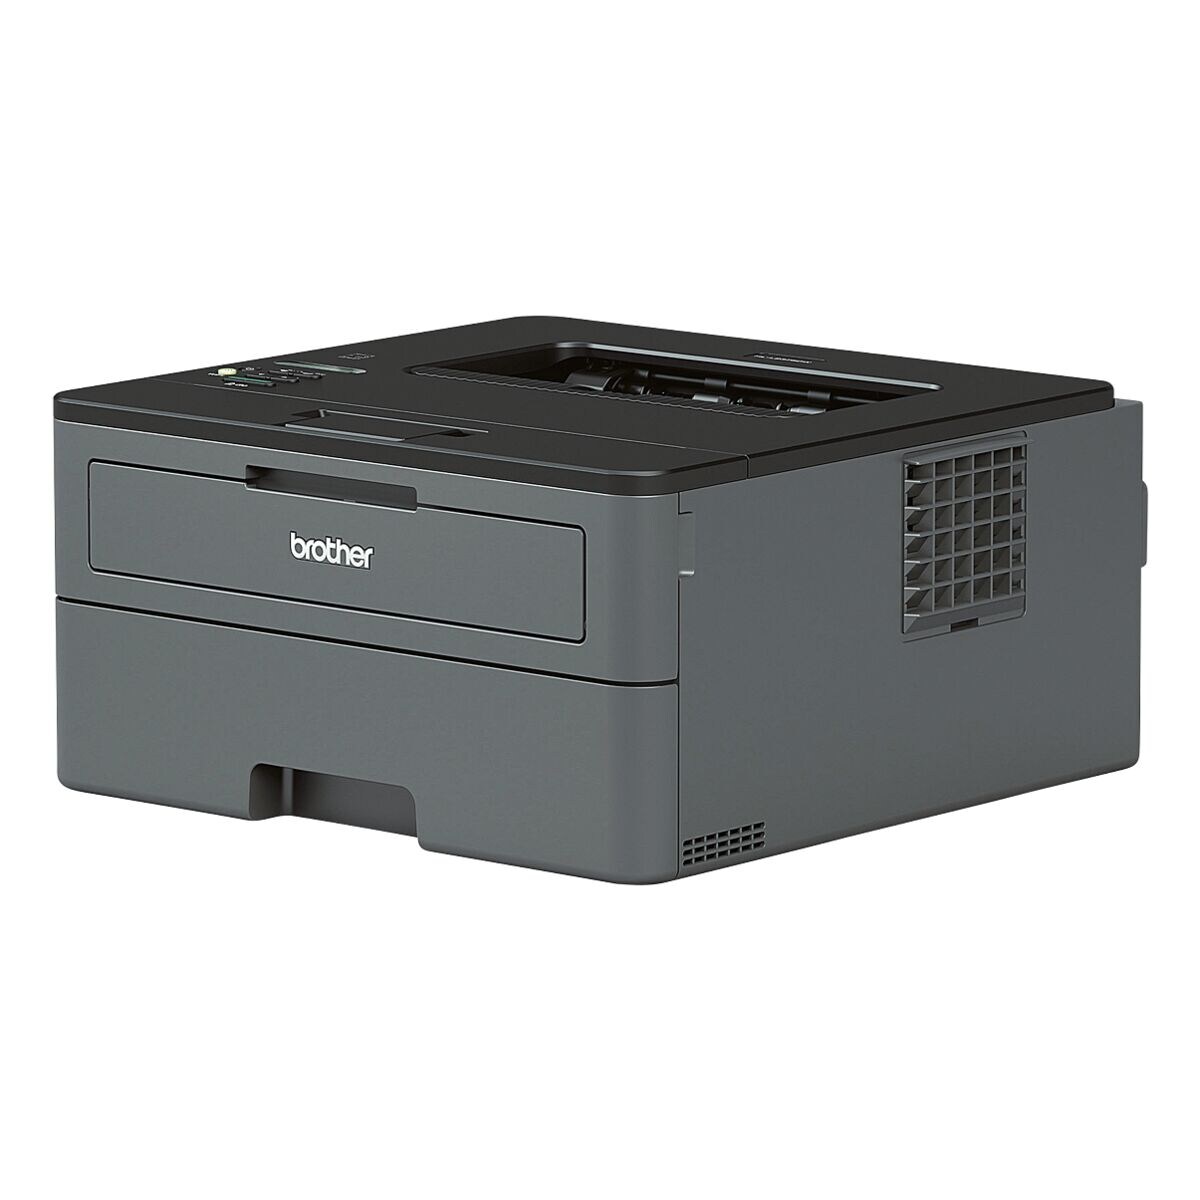 Brother HL-L2375DW Laserdrucker, A4 schwarz weiß Laserdrucker, 1200 x 1200 dpi, mit LAN und WLAN